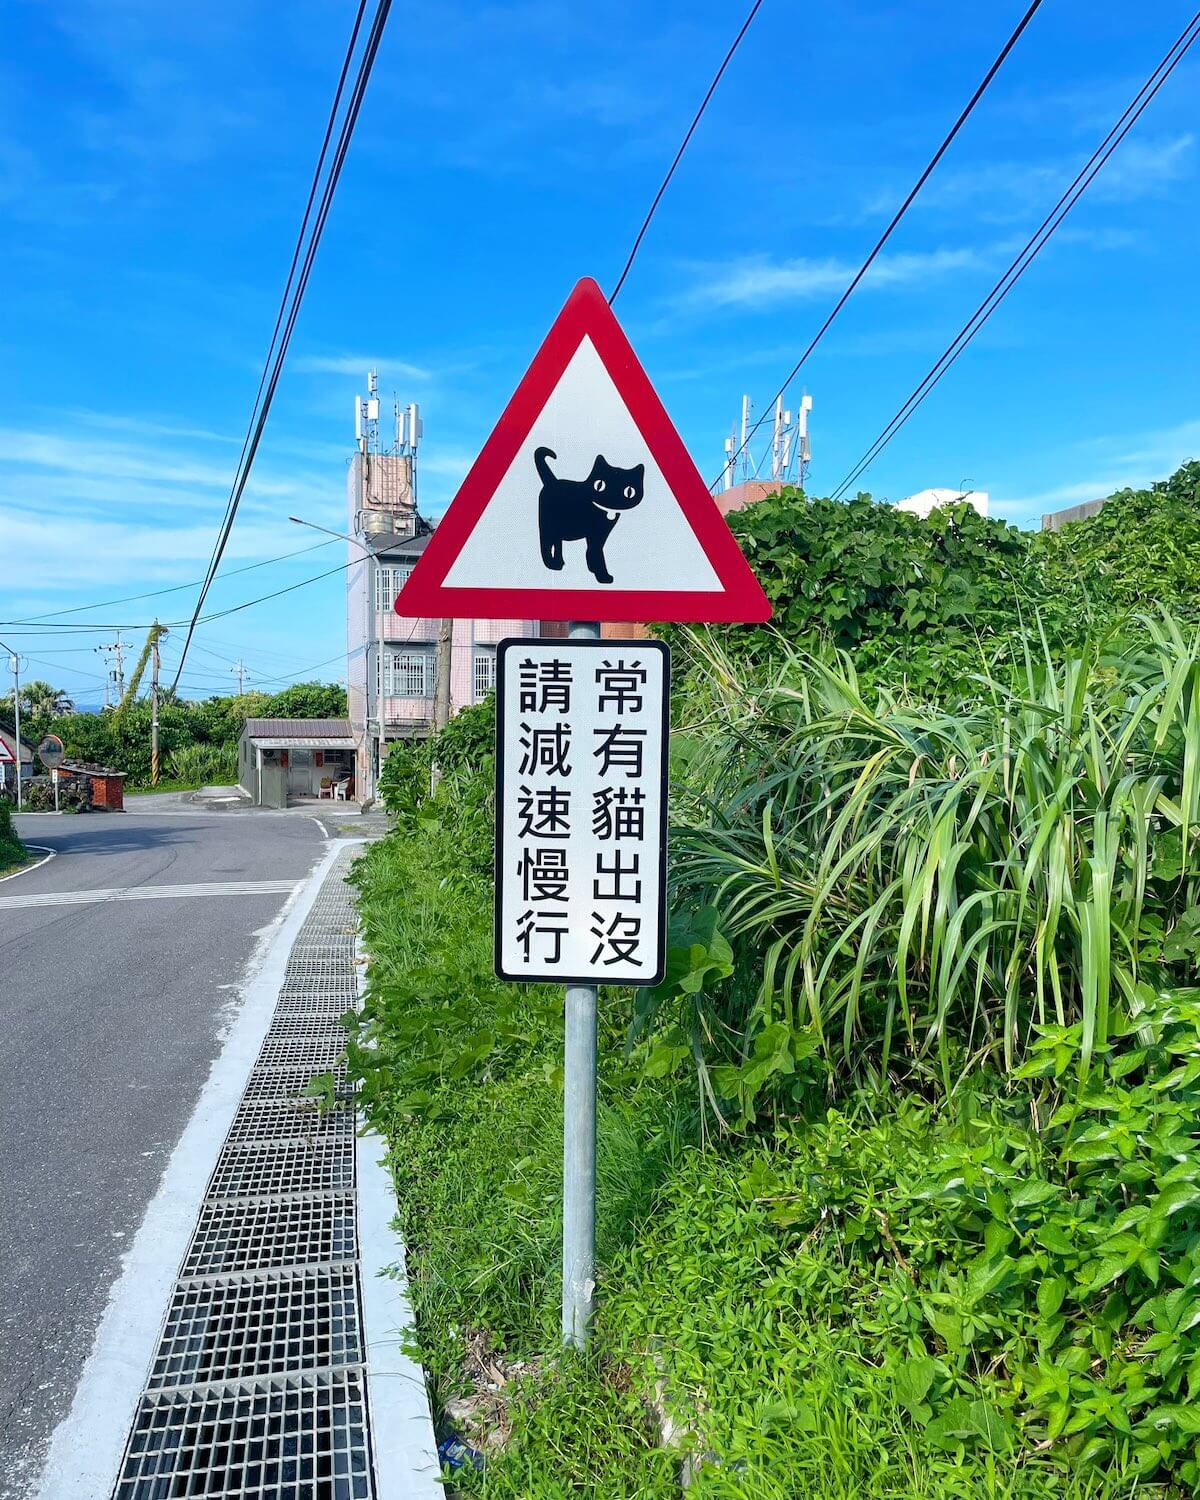 台湾に設置されている「ネコ注意」の道路標識（警戒標識）の実物イメージ